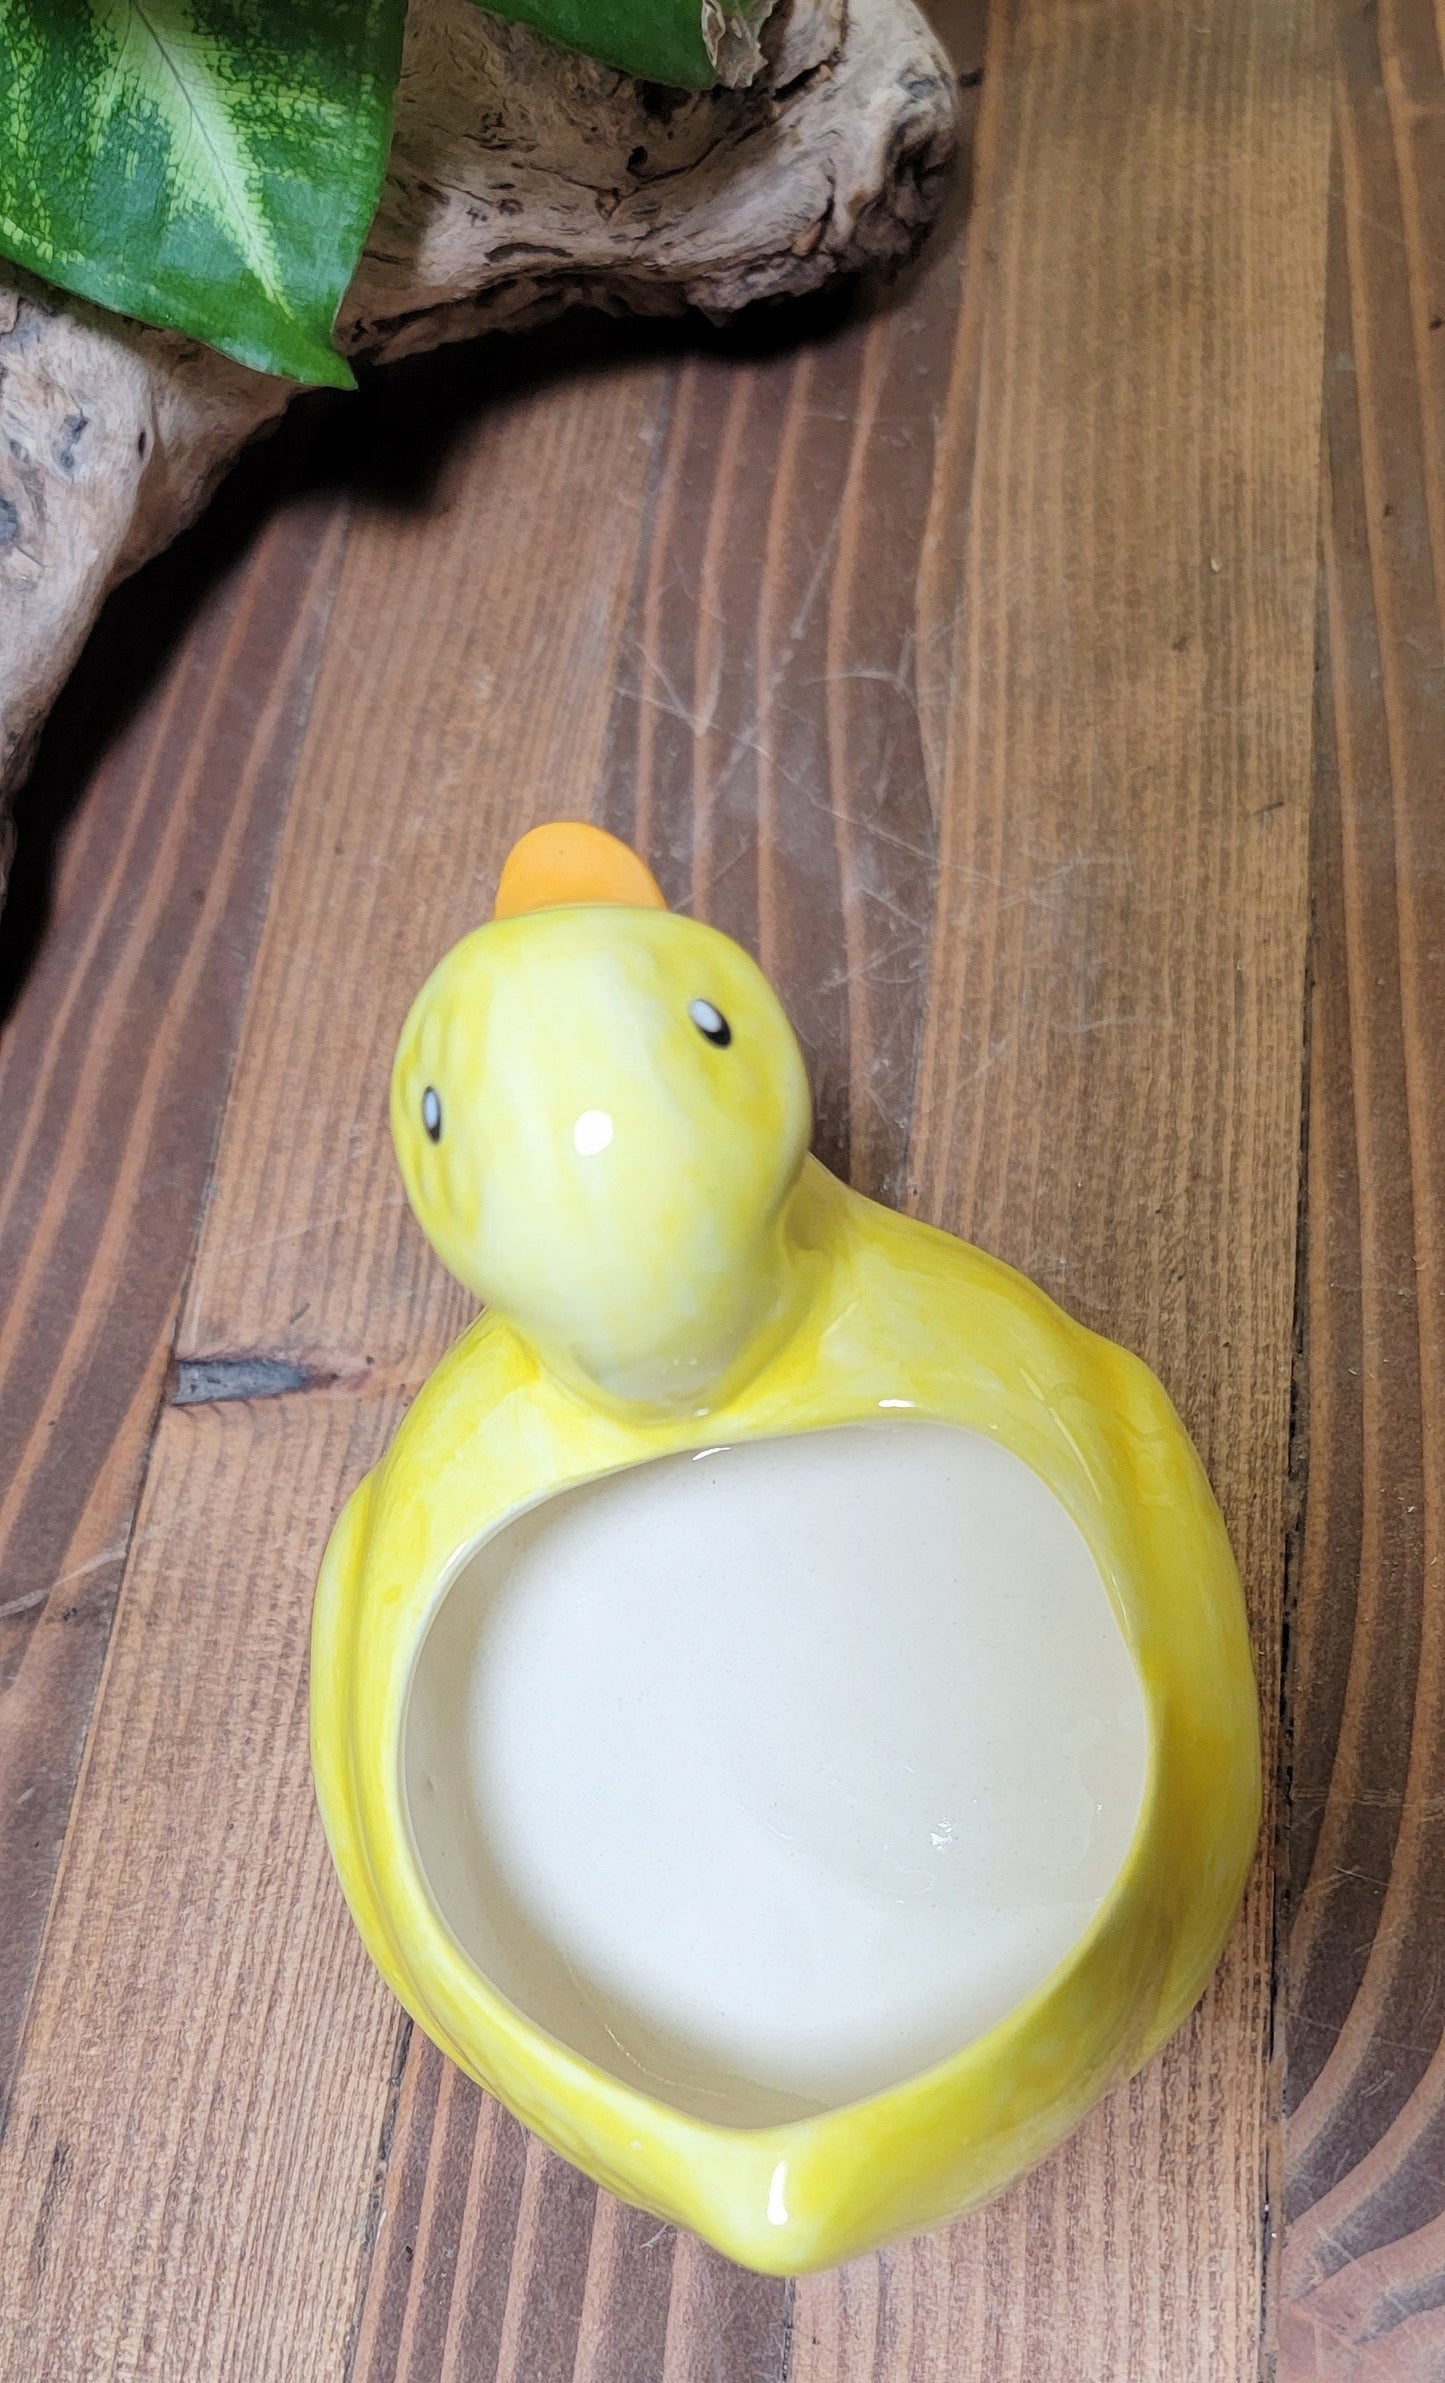 Small Ceramic Duck Planter